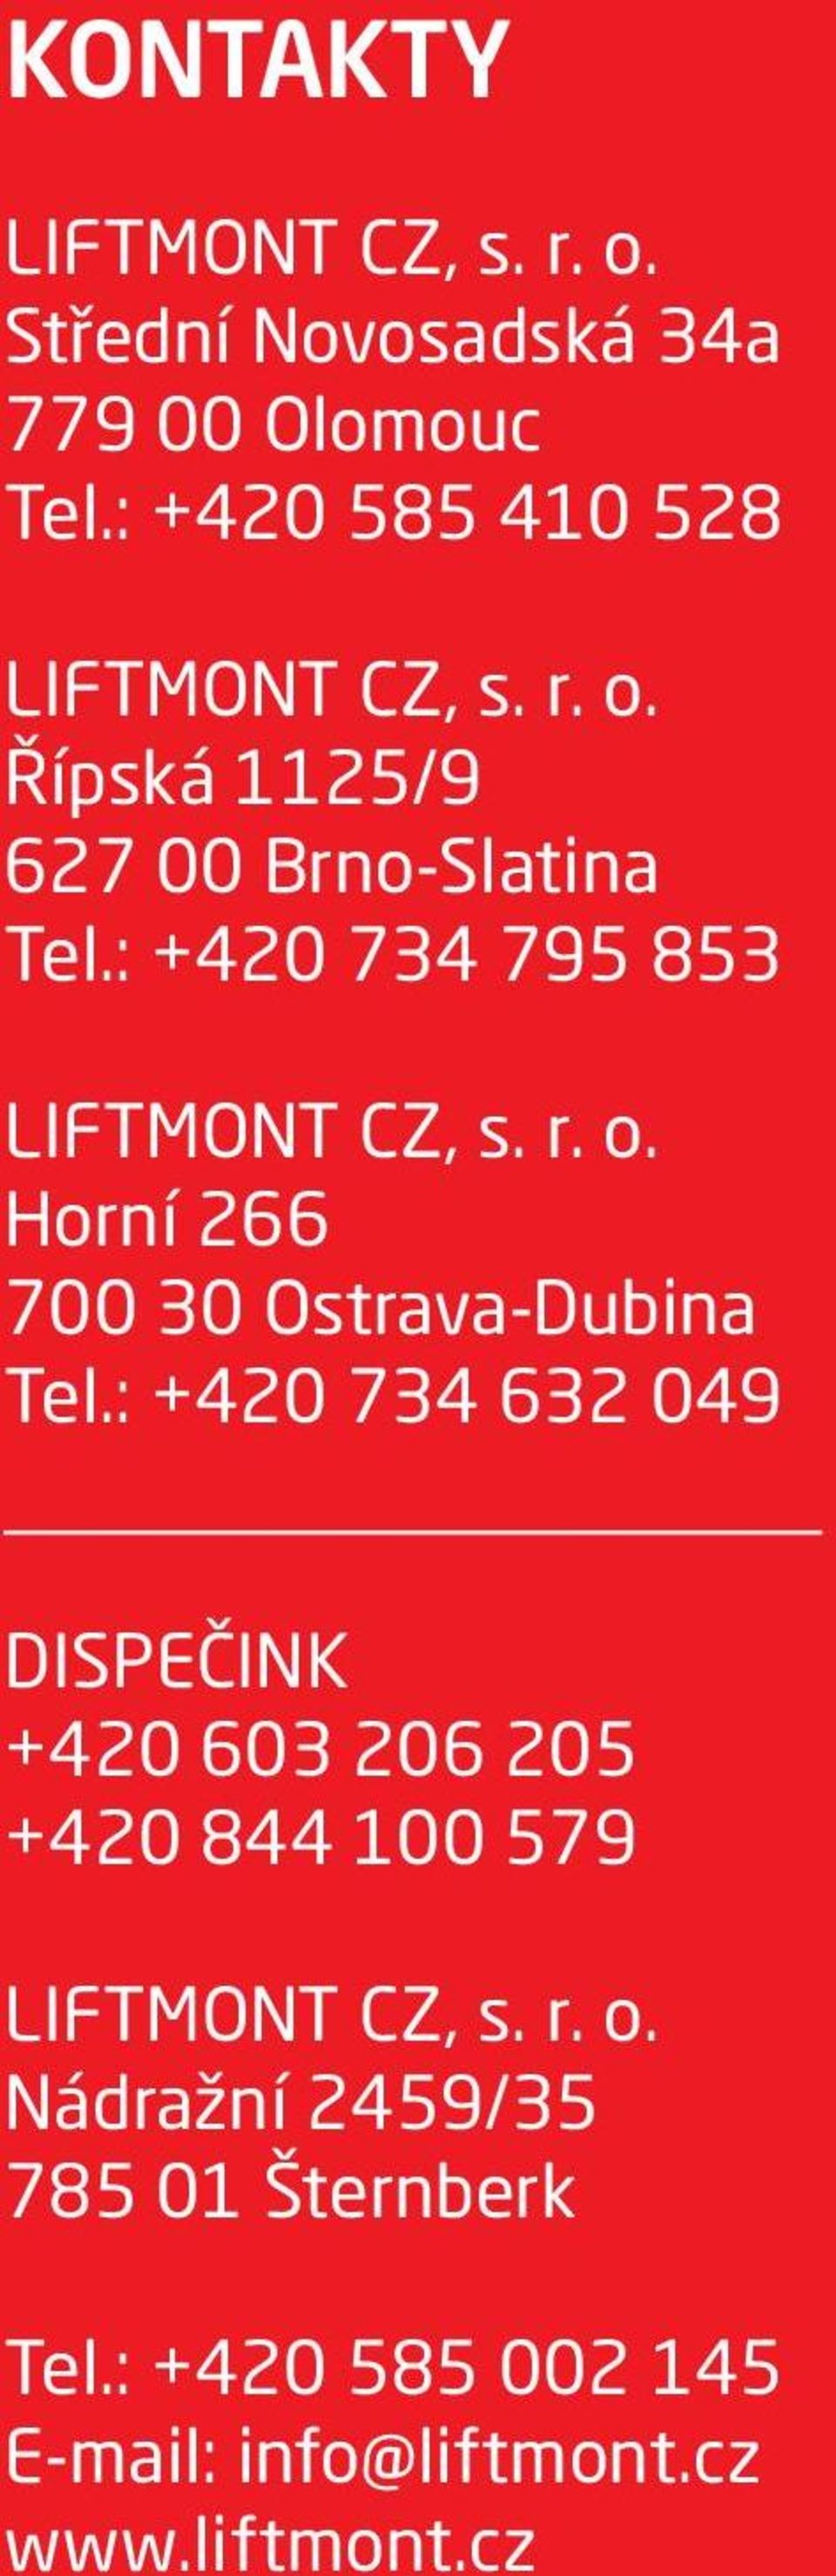 : +420 734 795 853 LIFTMONT CZ, s. r. o. Horní 266 700 30 Ostrava-Dubina Tel.